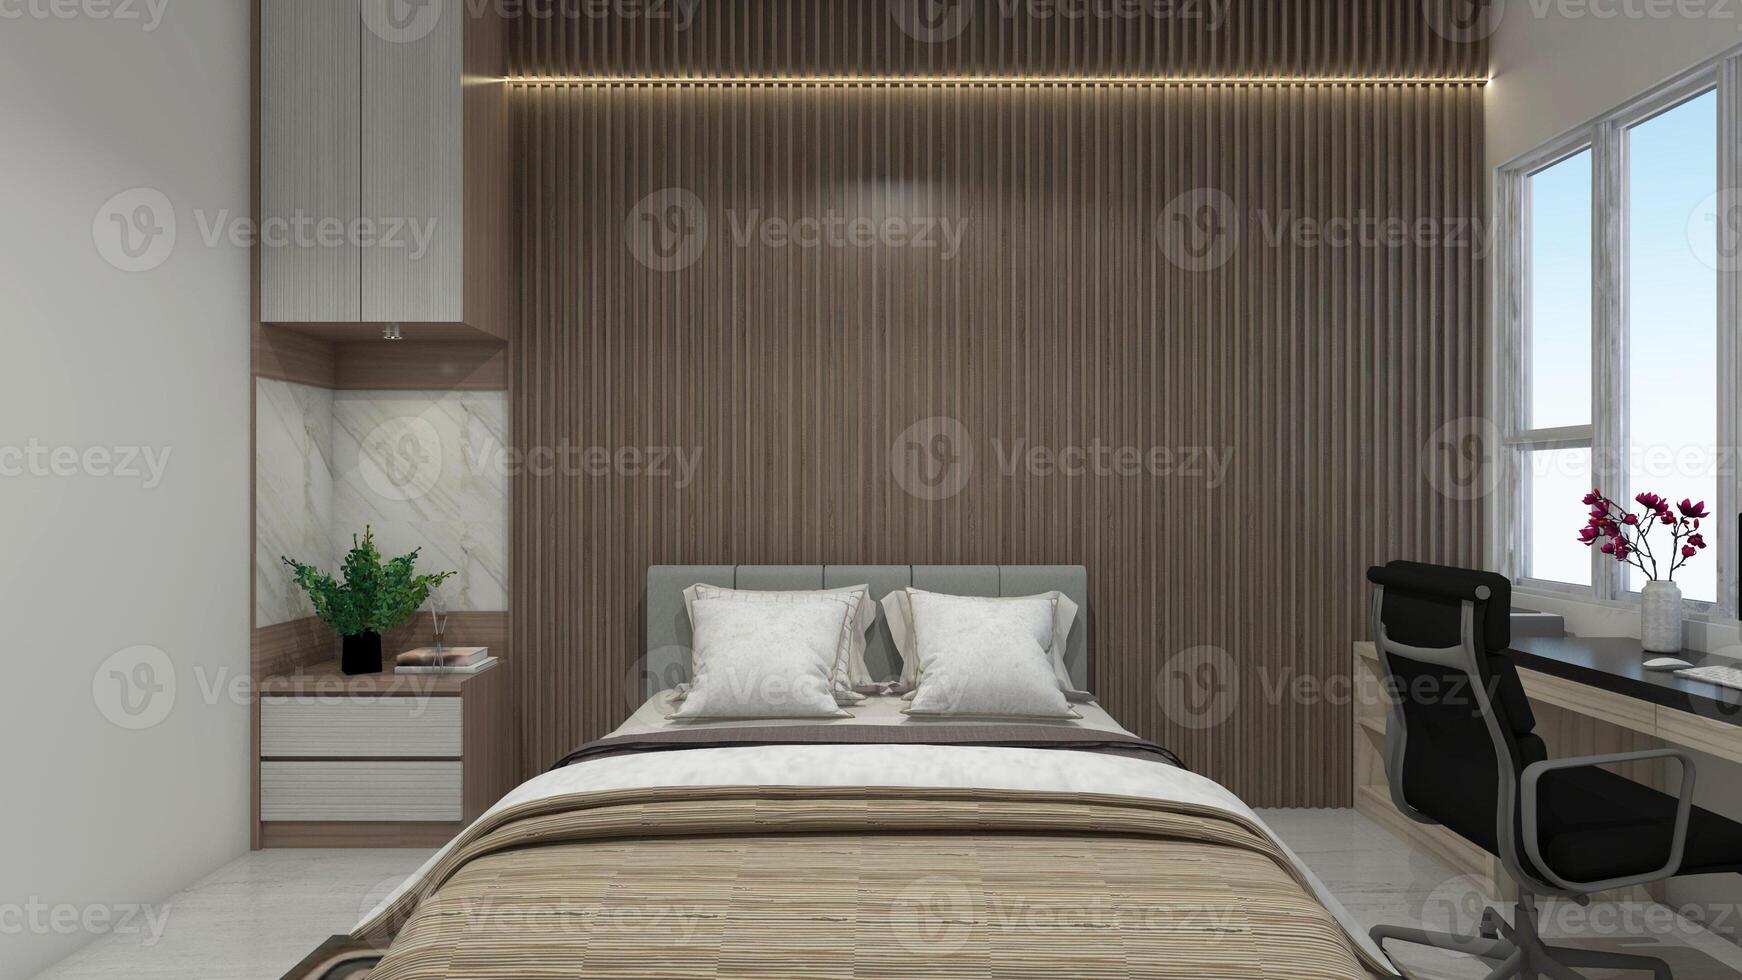 interiör sovrum design med rustik stil använder sig av trä- inredning, 3d illustration foto